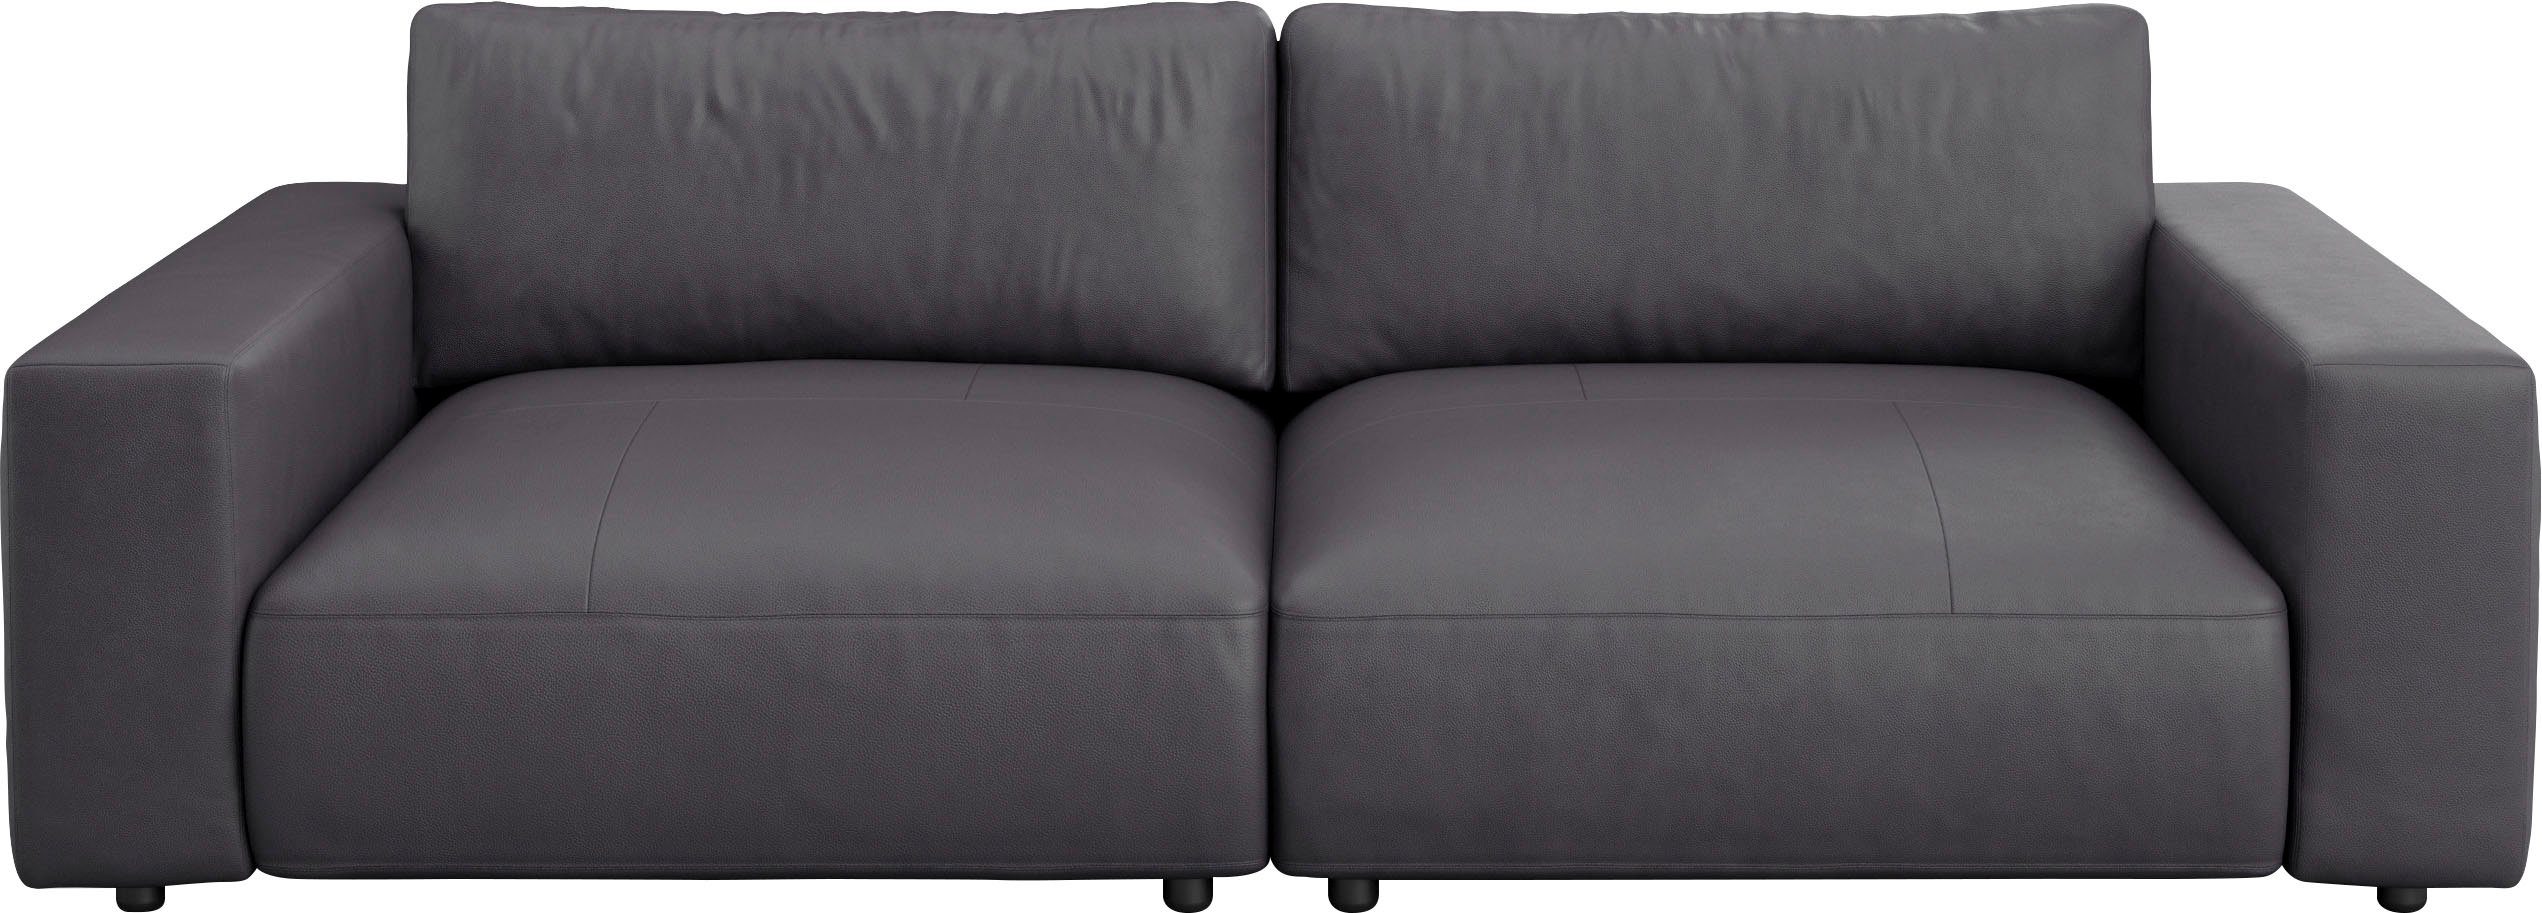 M Qualitäten Musterring Big-Sofa by und 4 LUCIA, 2,5-Sitzer unterschiedlichen GALLERY in vielen Nähten, branded